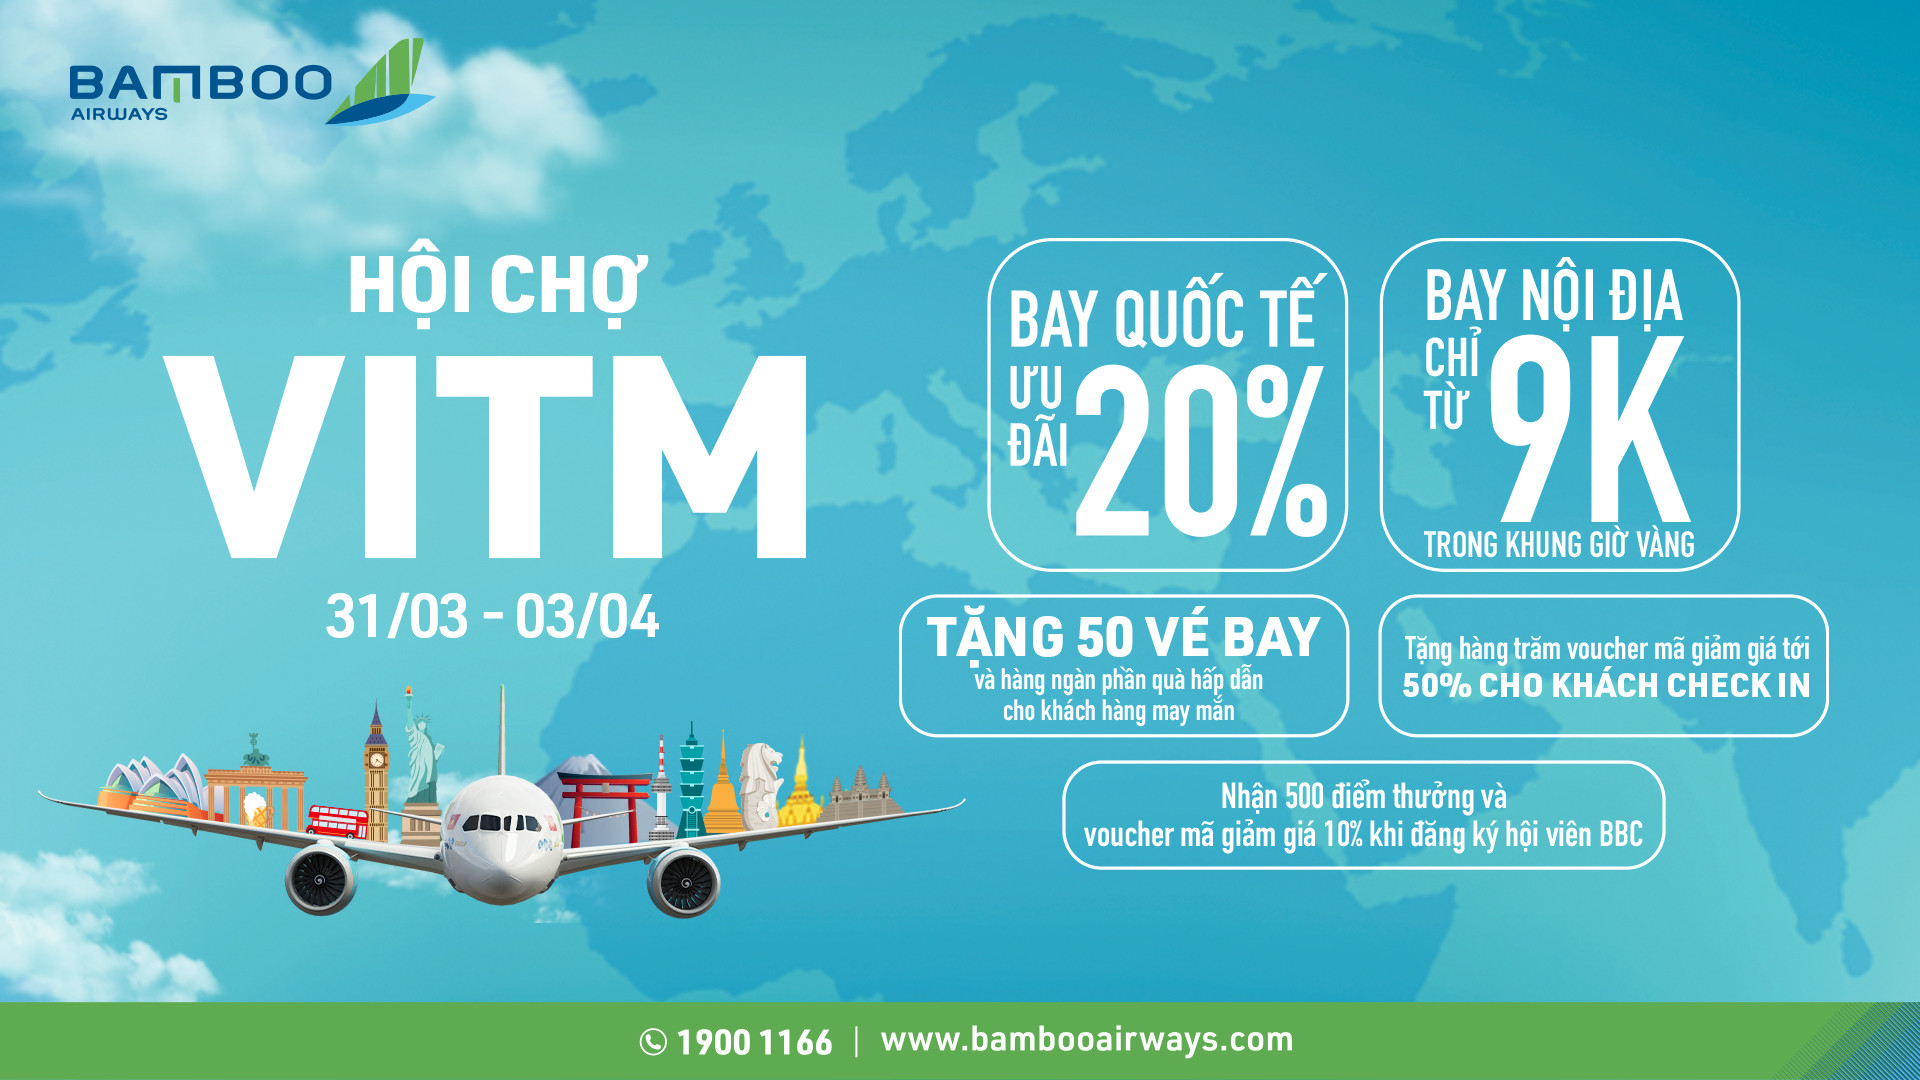 Bamboo Airways đem đến hàng ngàn ưu đãi bay hấp dẫn trong gian hàng tại VITM 2022.